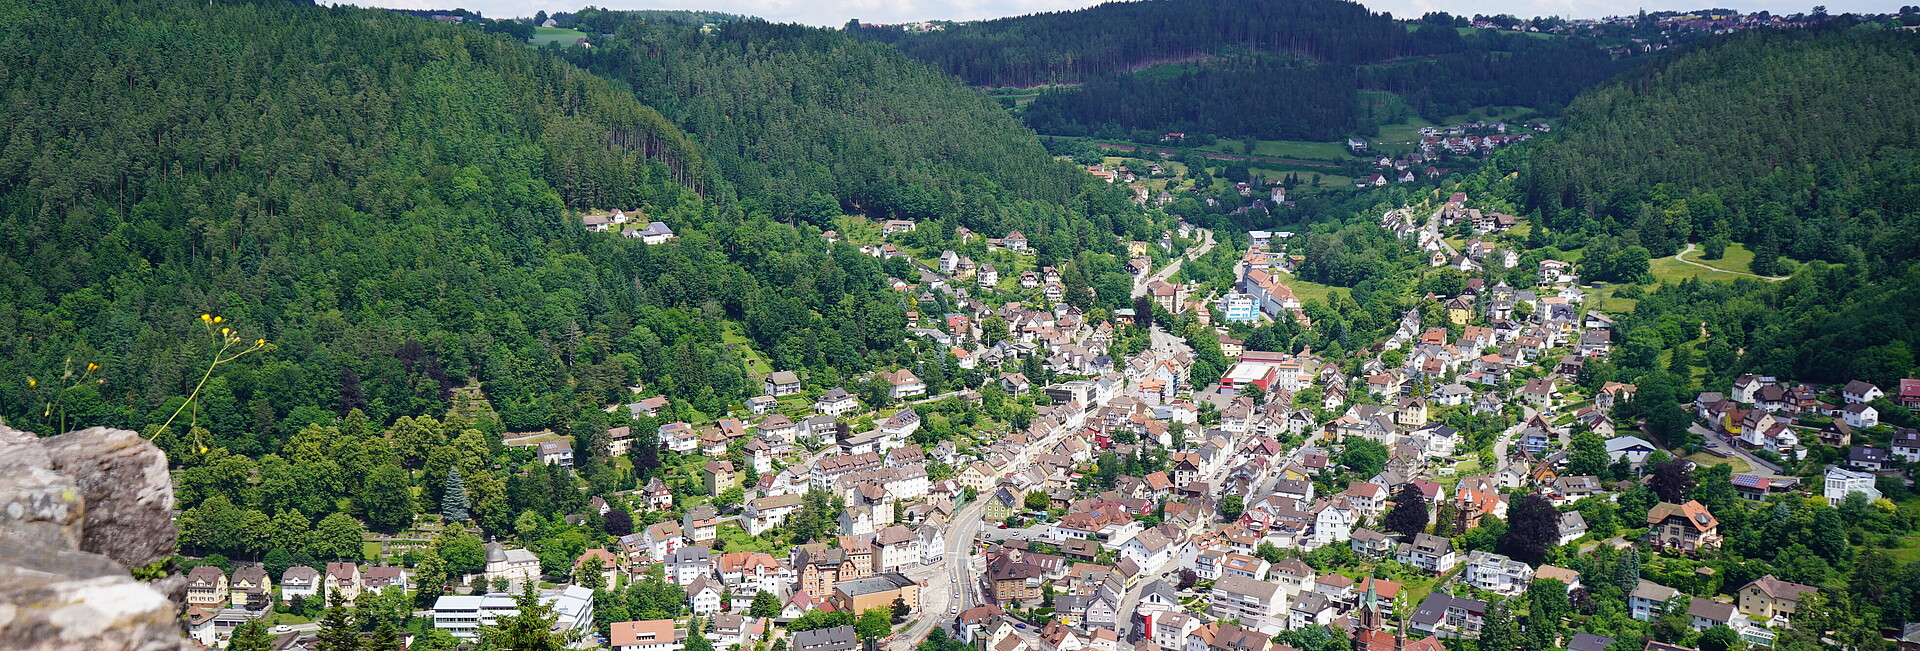 Schramberg, fotografiert von einem höher gelegenen Berg